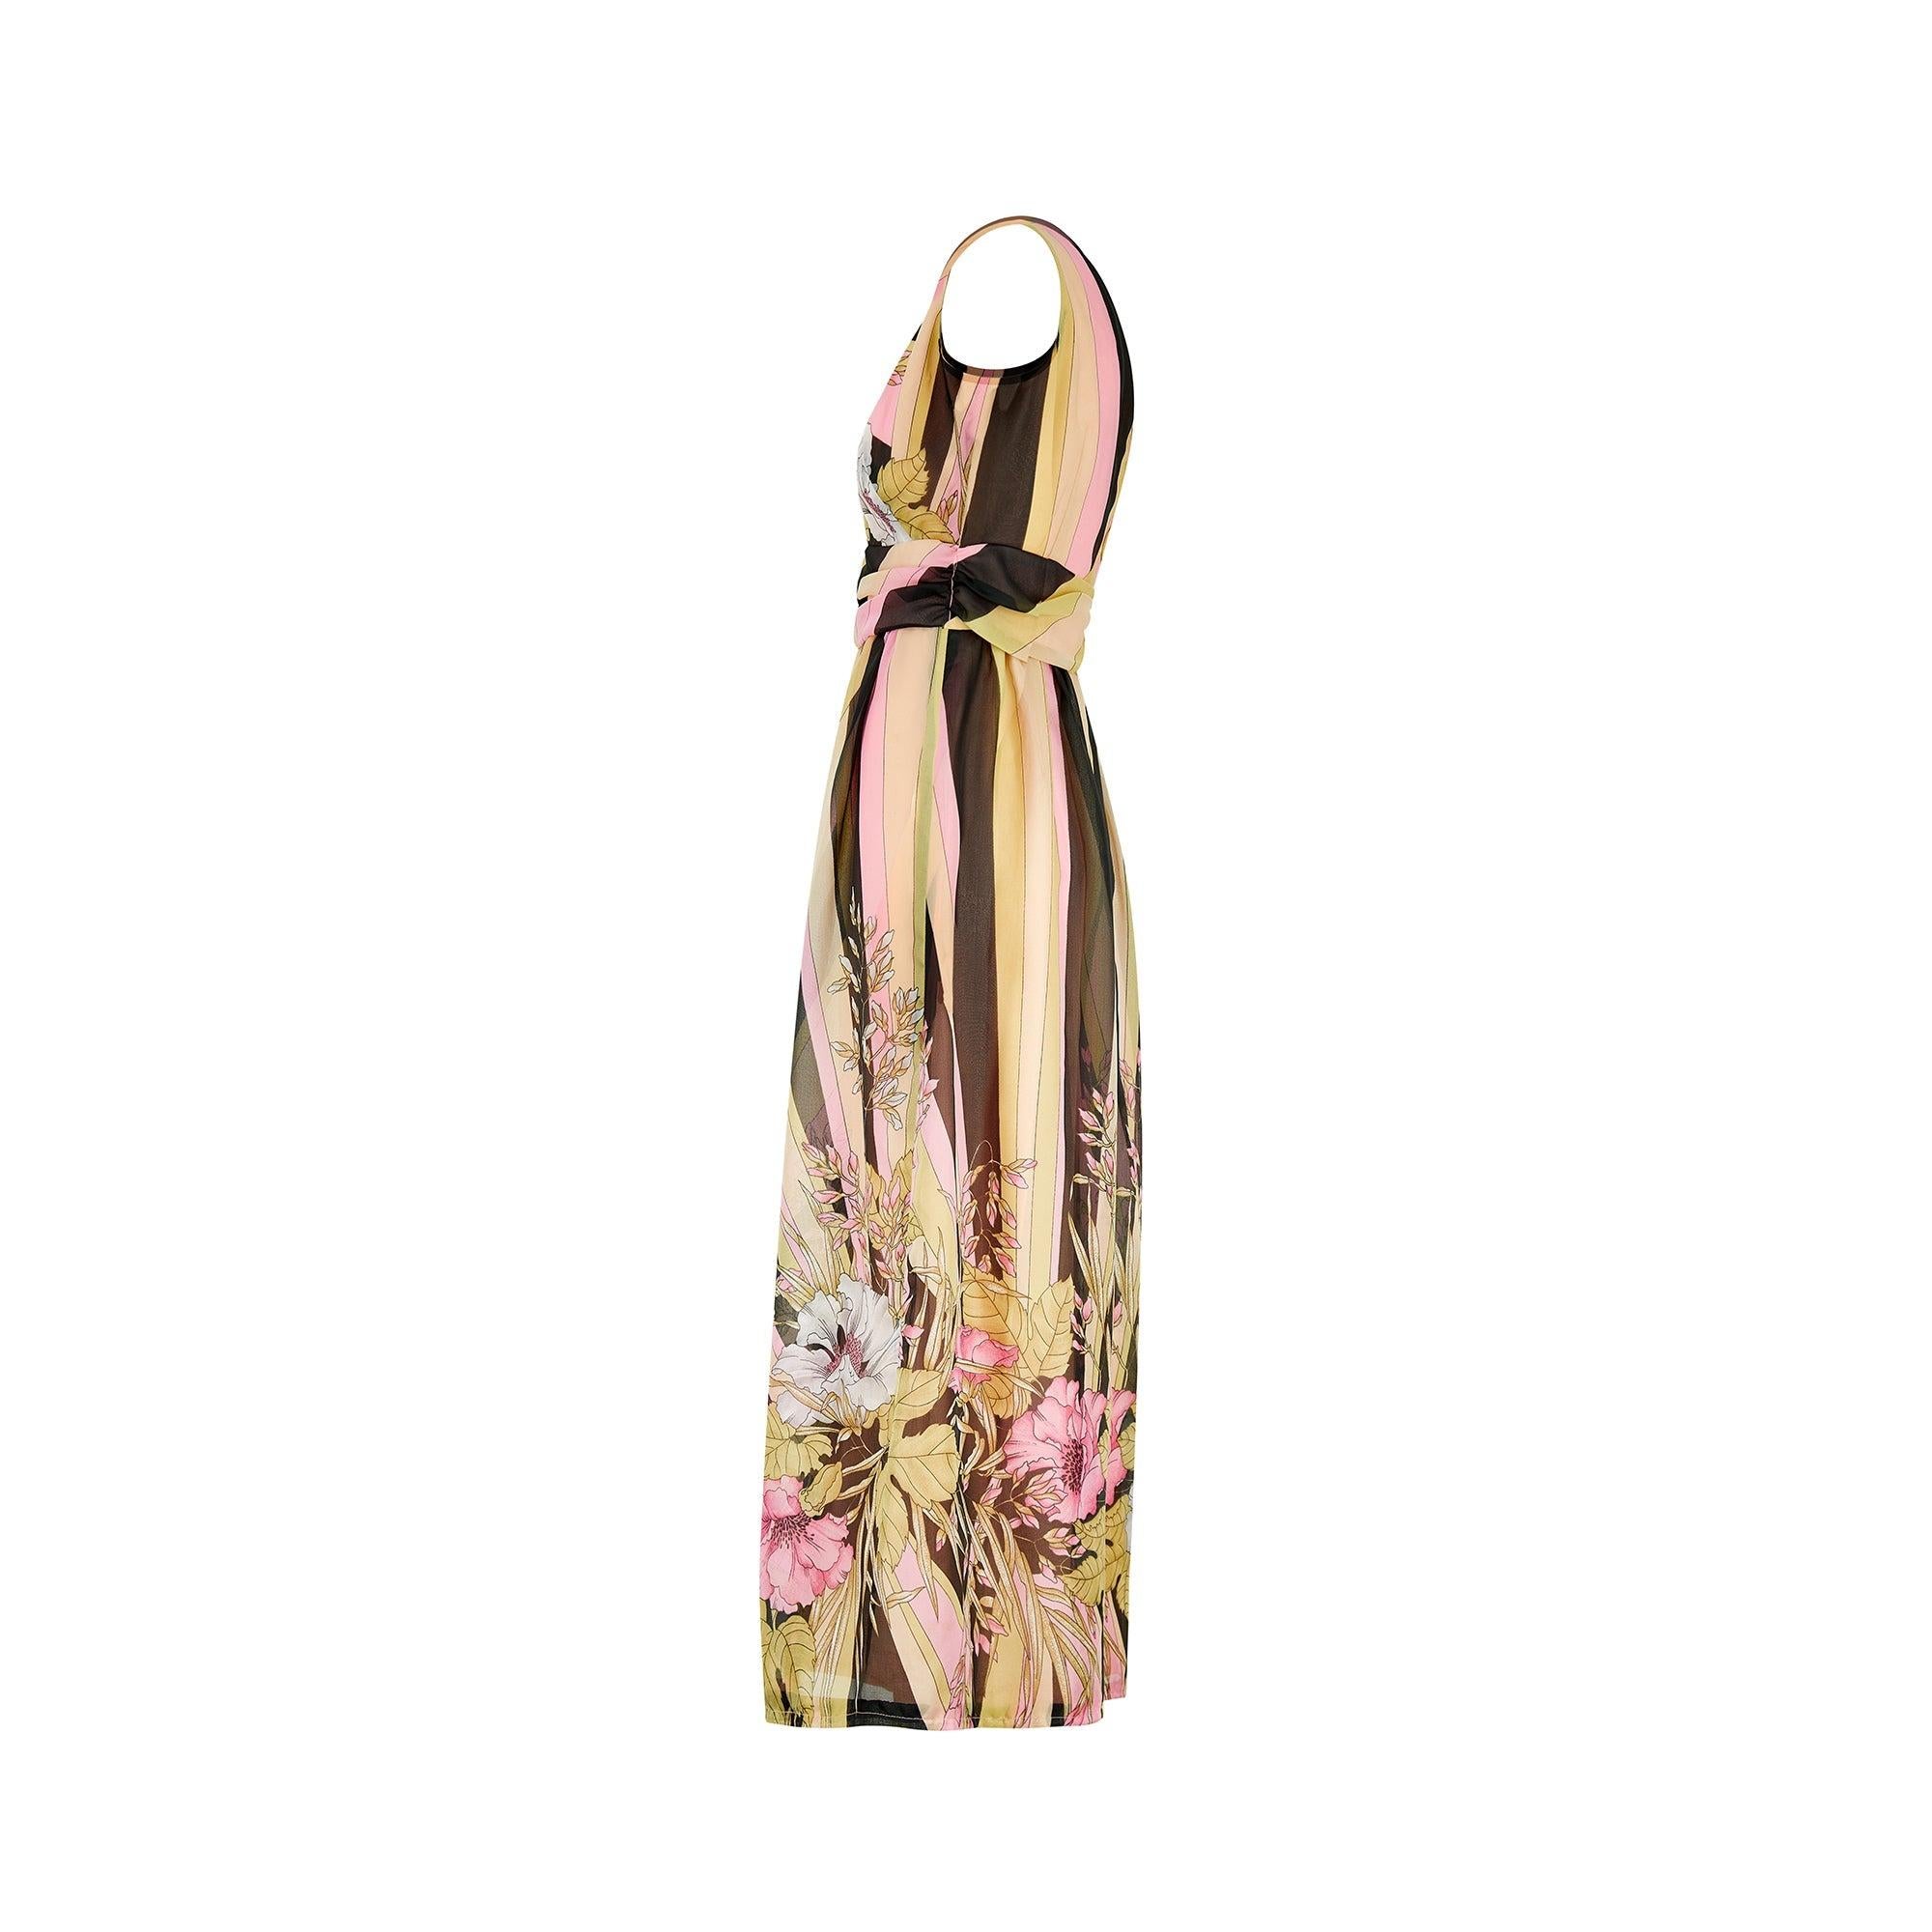 Dieses auffällige Kleid wurde in den 1970er Jahren von Frederick Howard in London entworfen. Das Kleidungsstück ist gut verarbeitet, und das einprägsame Farbschema des halbtransparenten Georgette-Stoffes umfasst Rosatöne, Brauntöne, Ocker und Grau.